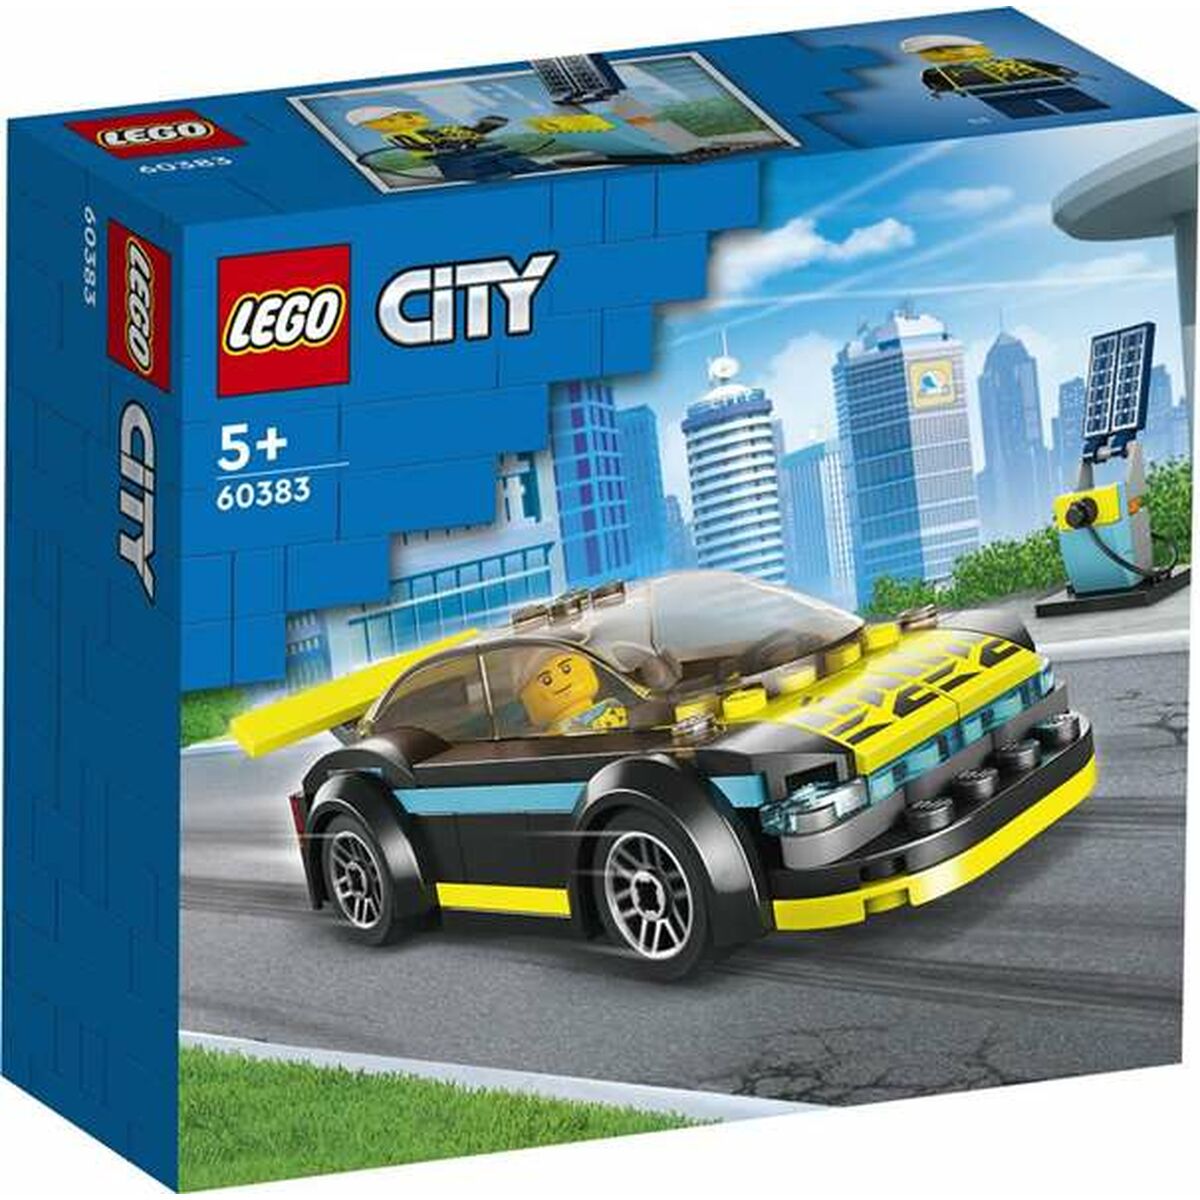 Playset Lego Action Figures Vehicle + 5 Years